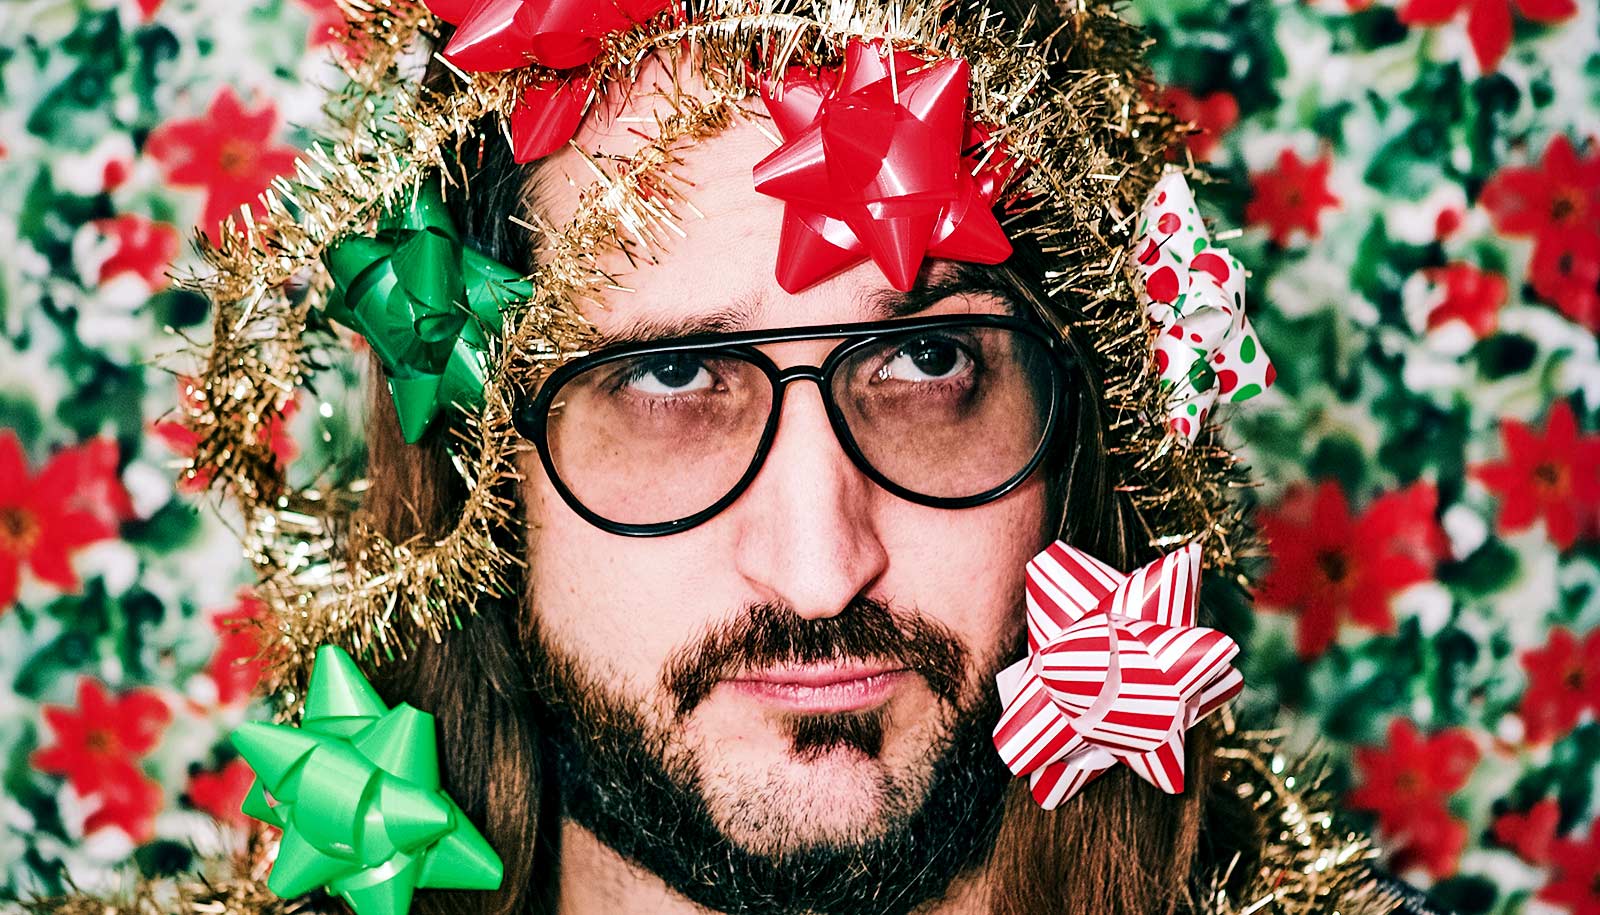 En mand ser frustreret ud dækket af julegavesløjfer.